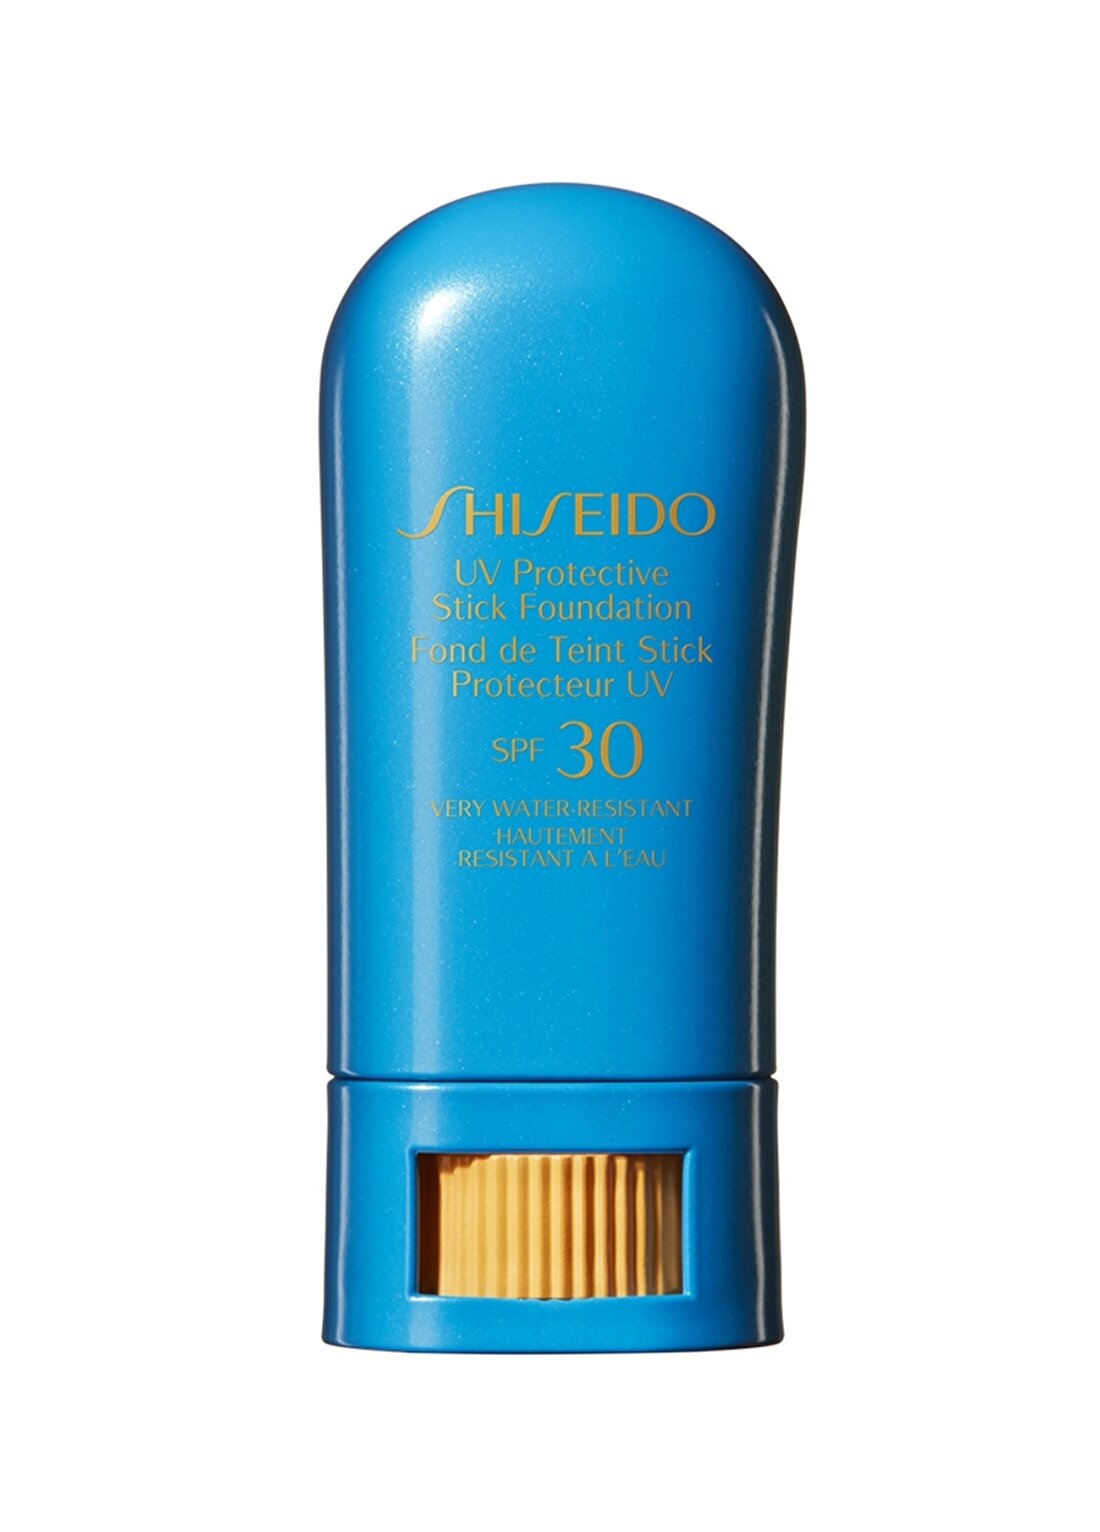 Shiseido Spf 30 Korumalı Suya Ve Tere Dayanıklı Stik Fondöten Ochre Güneş Ürünü